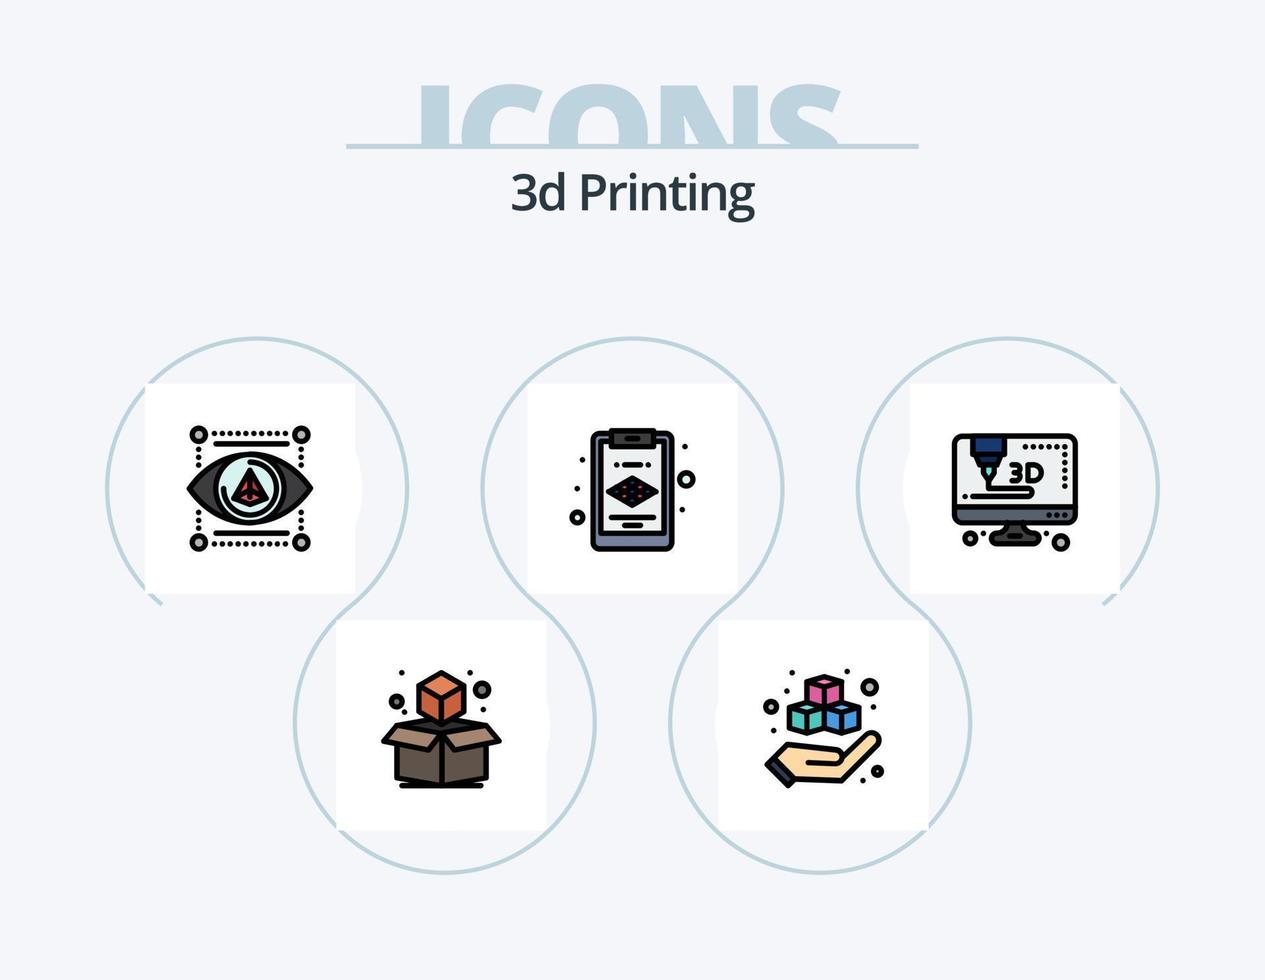 Línea de impresión 3d llena de diseño de iconos del paquete de iconos 5. láser. láser. 3d. impresión. modelado vector